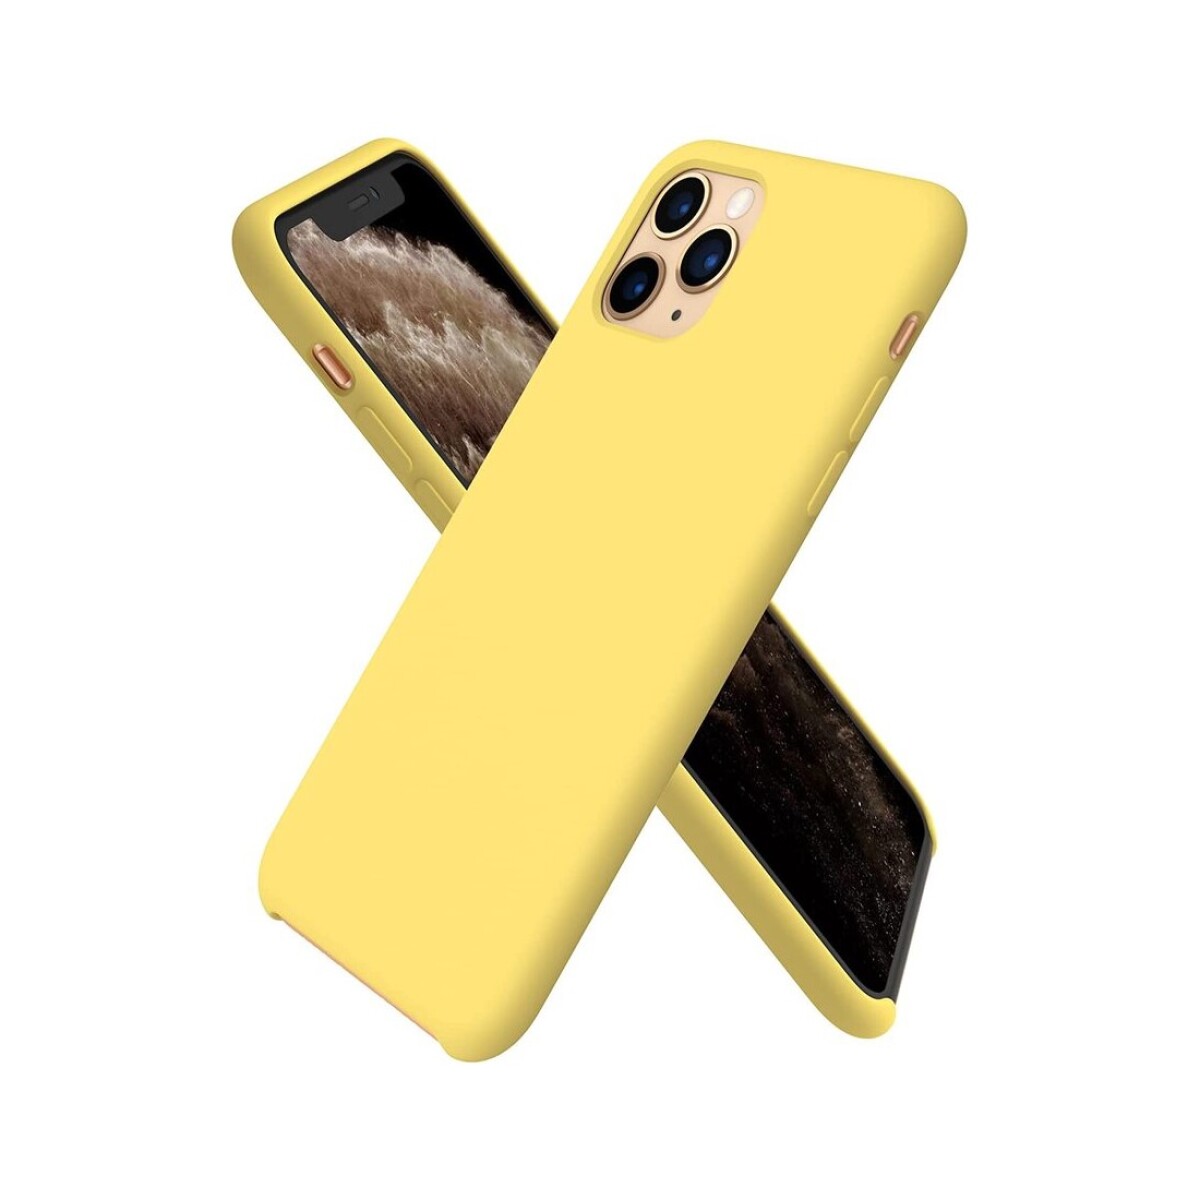 Protector case de silicona para iphone 11 pro - Amarillo 